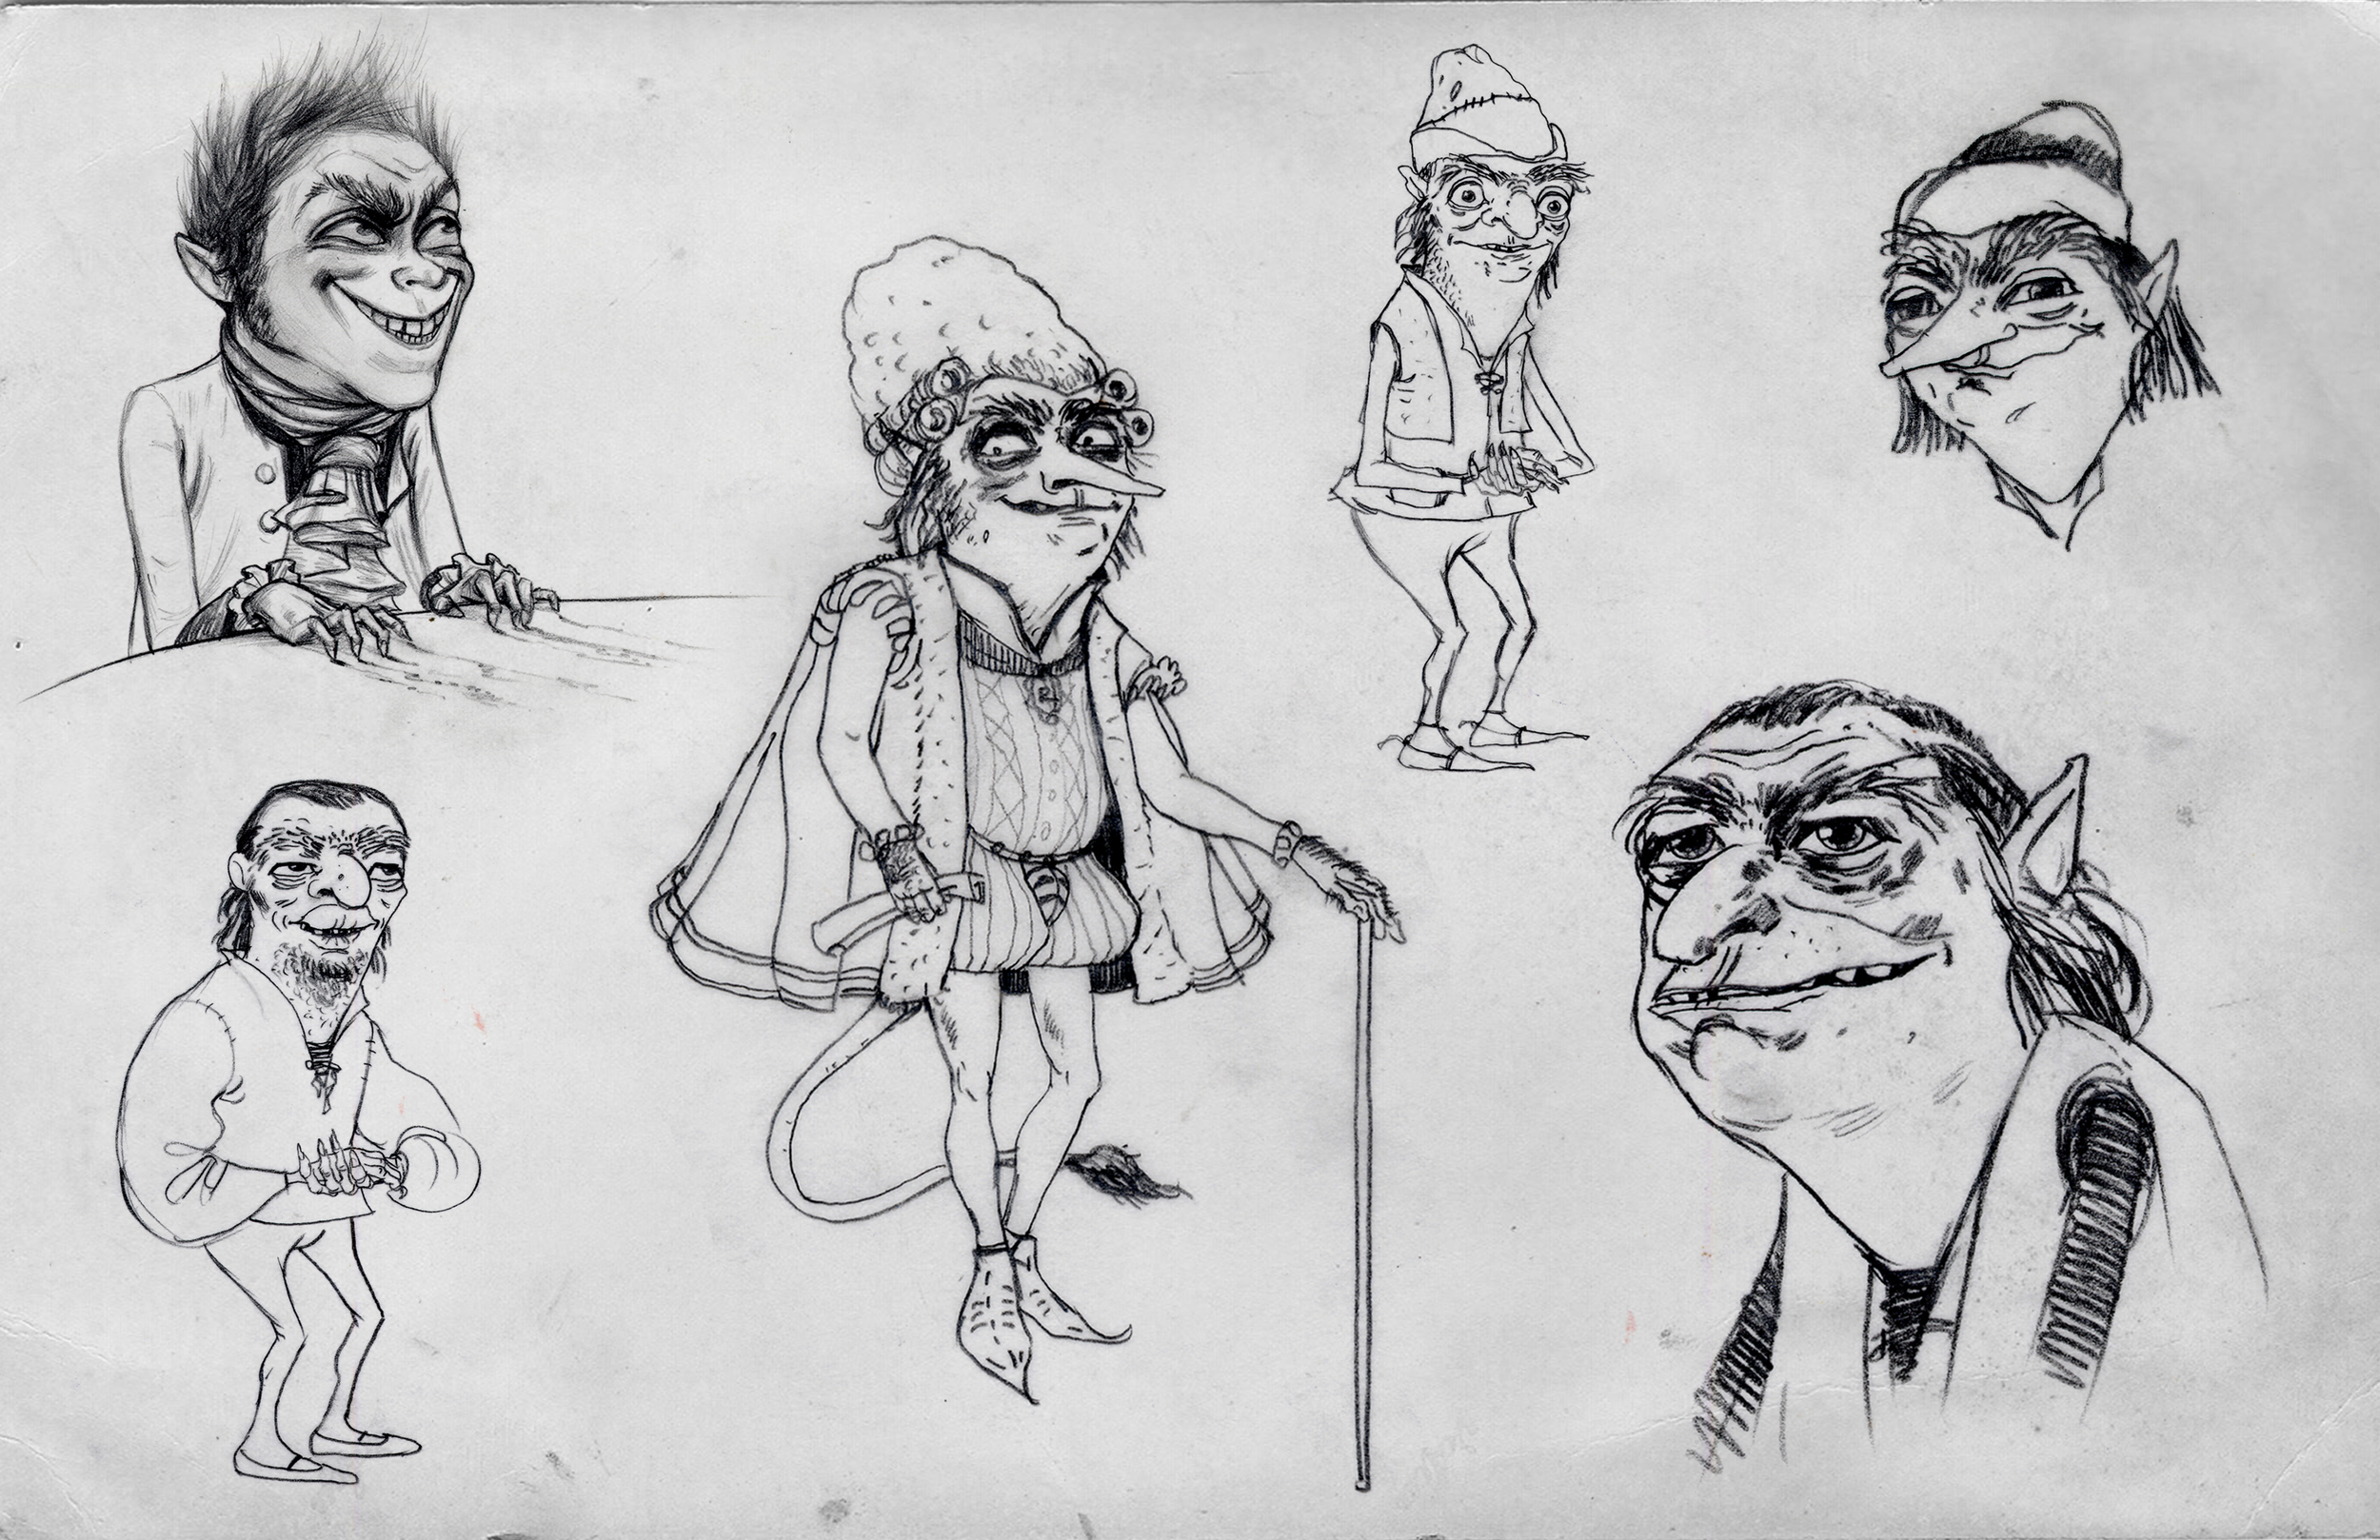  Shrek Forever After, DWA Rumpelstiltskin character design sketches    